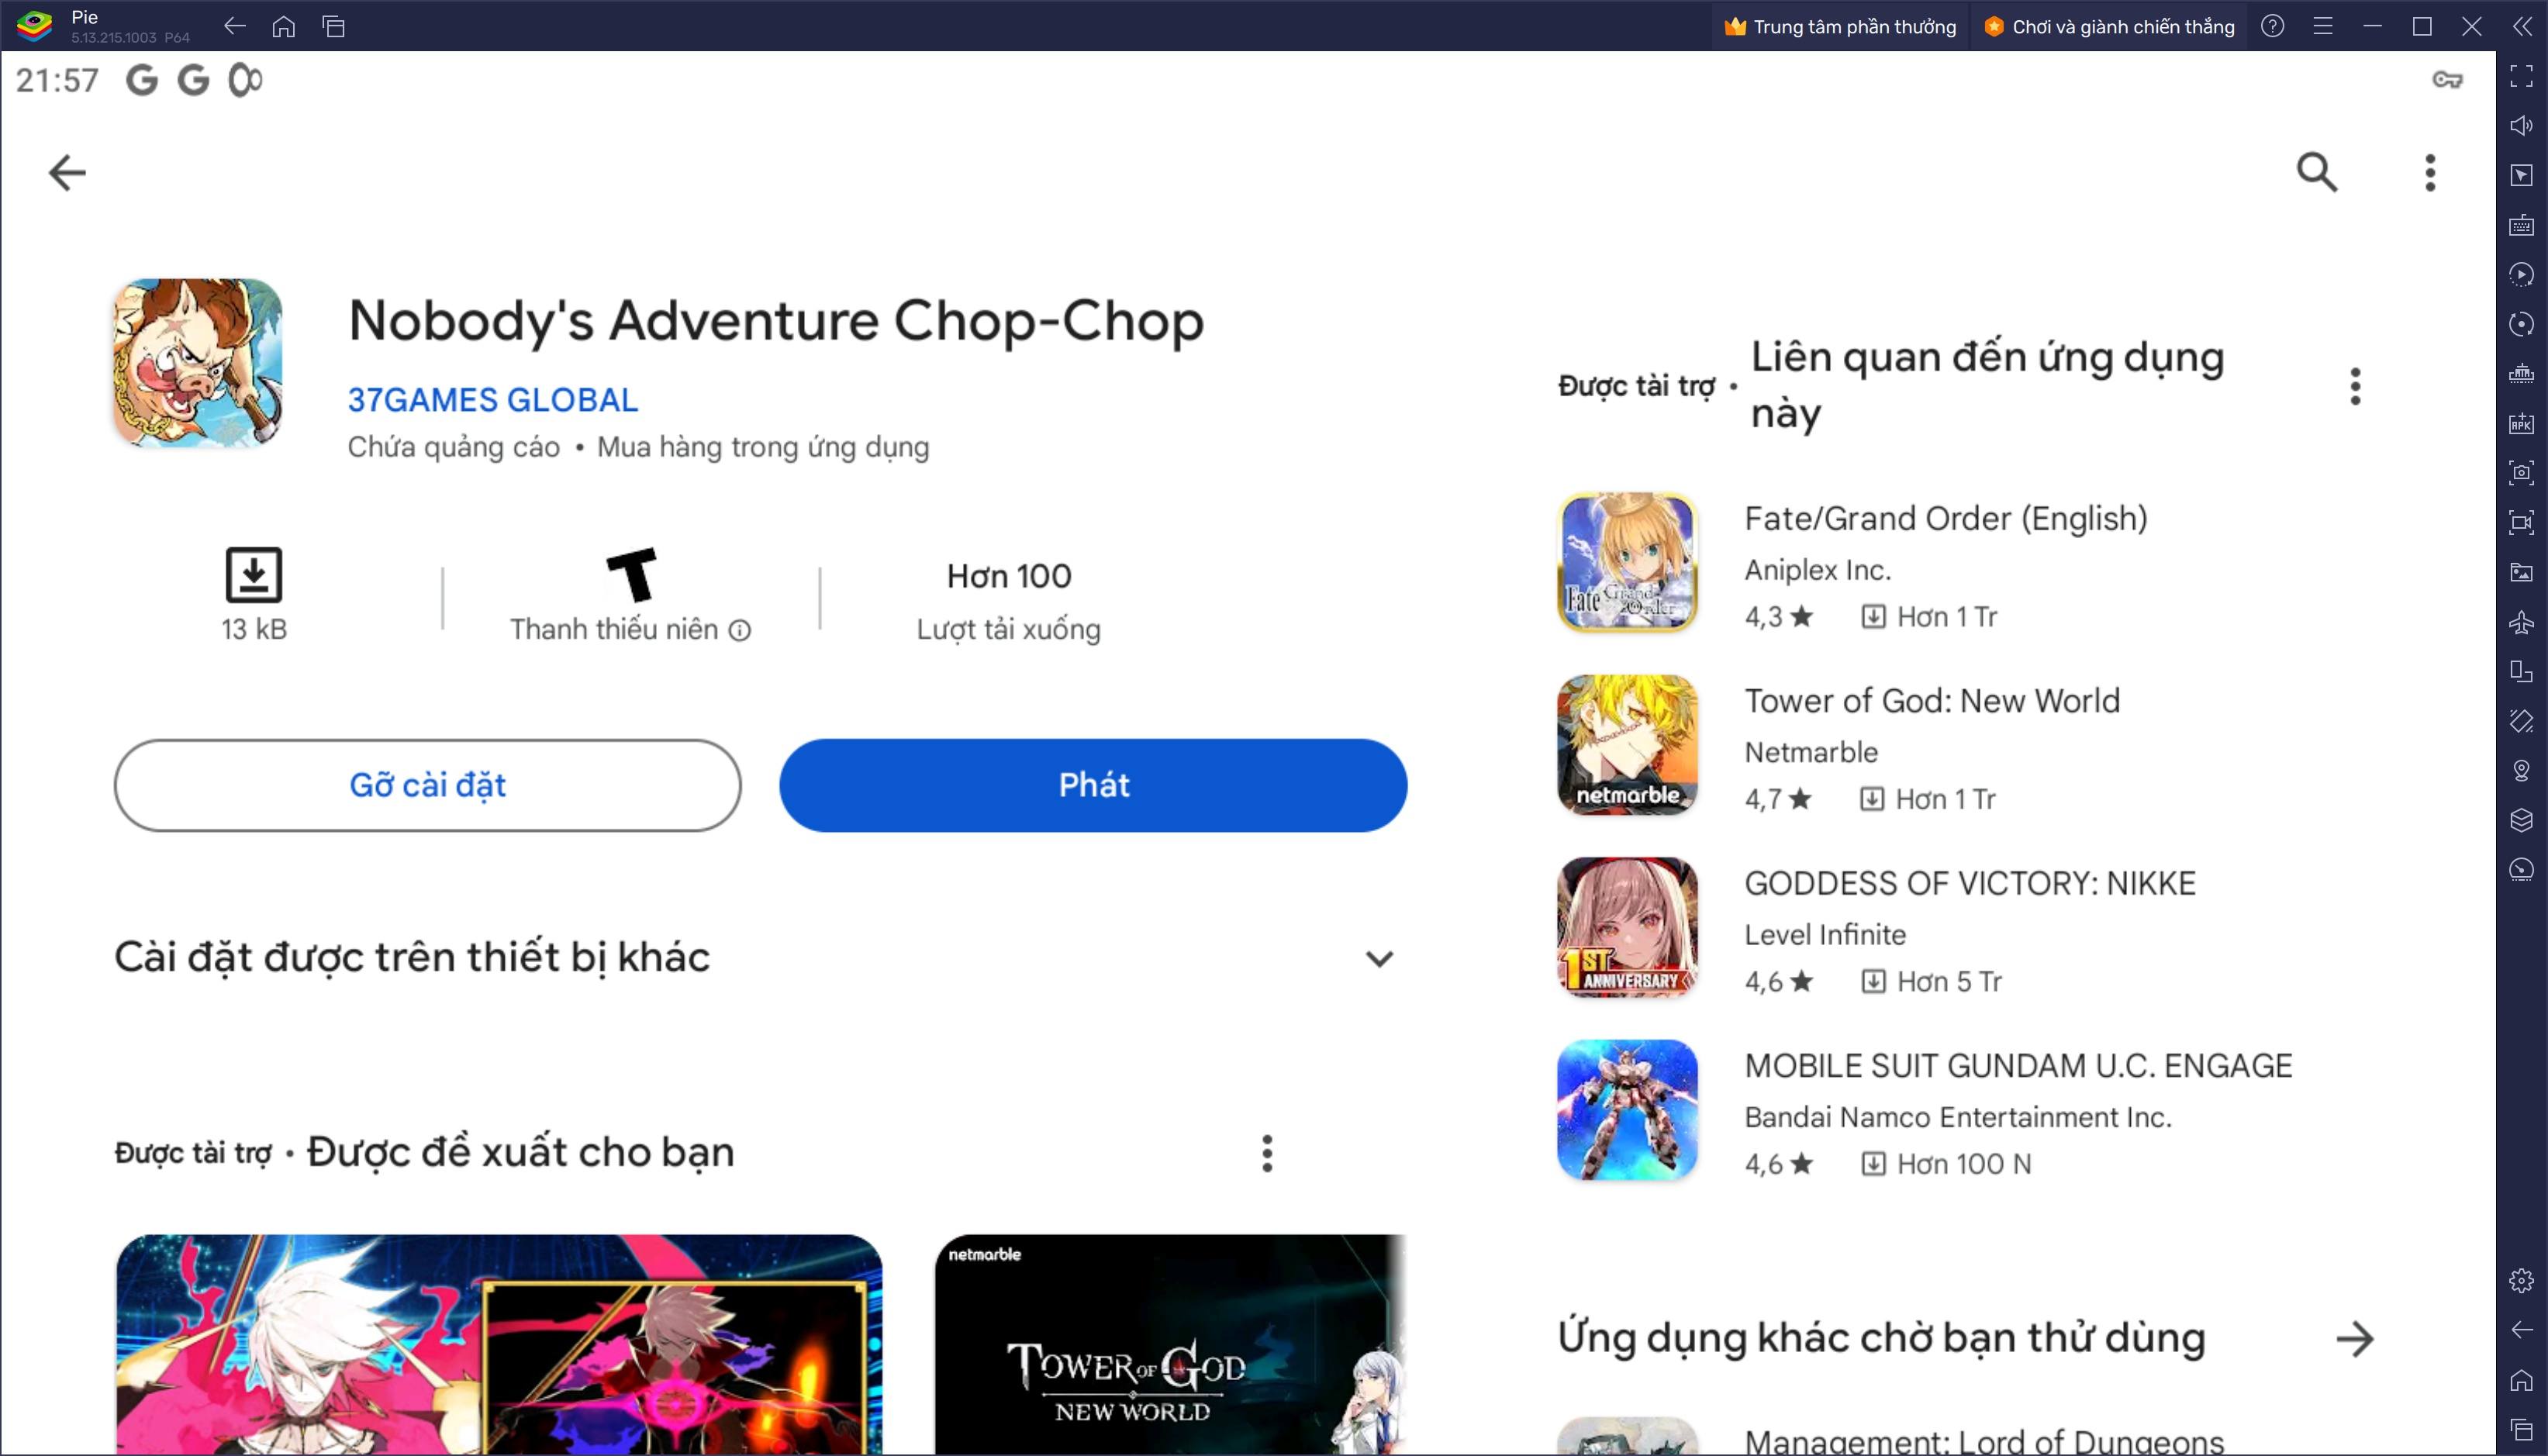 Cùng chơi Nobody’s Adventure Chop-Chop trên PC với BlueStacks